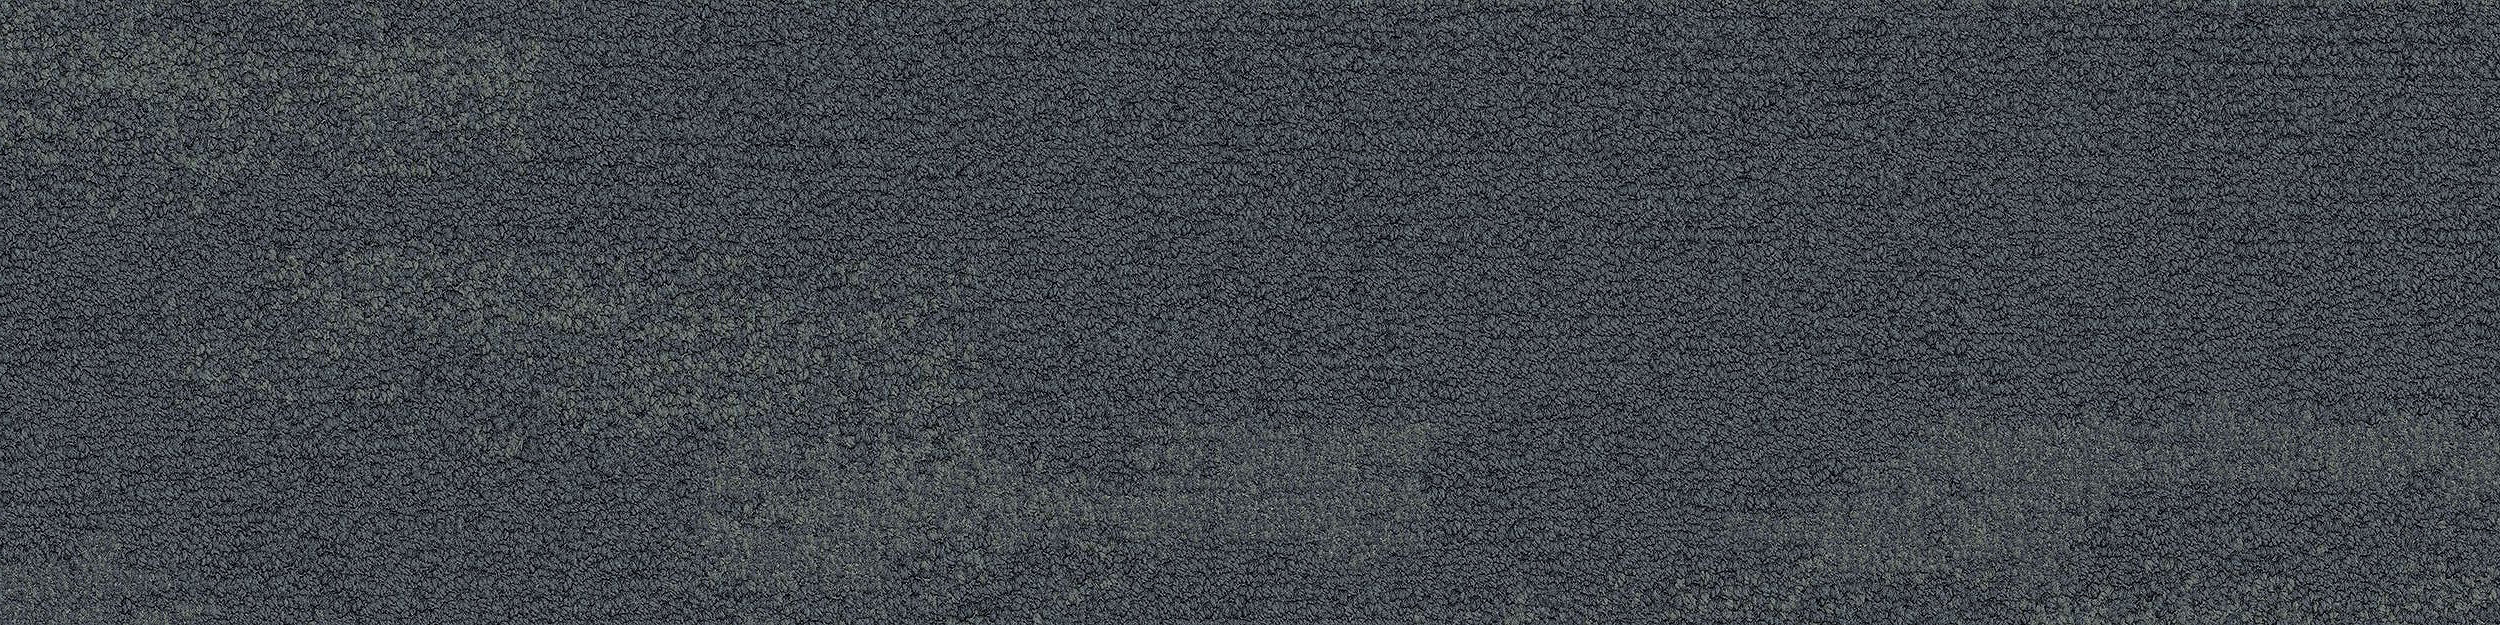 NF401 Carpet Tile In Shale Bildnummer 10